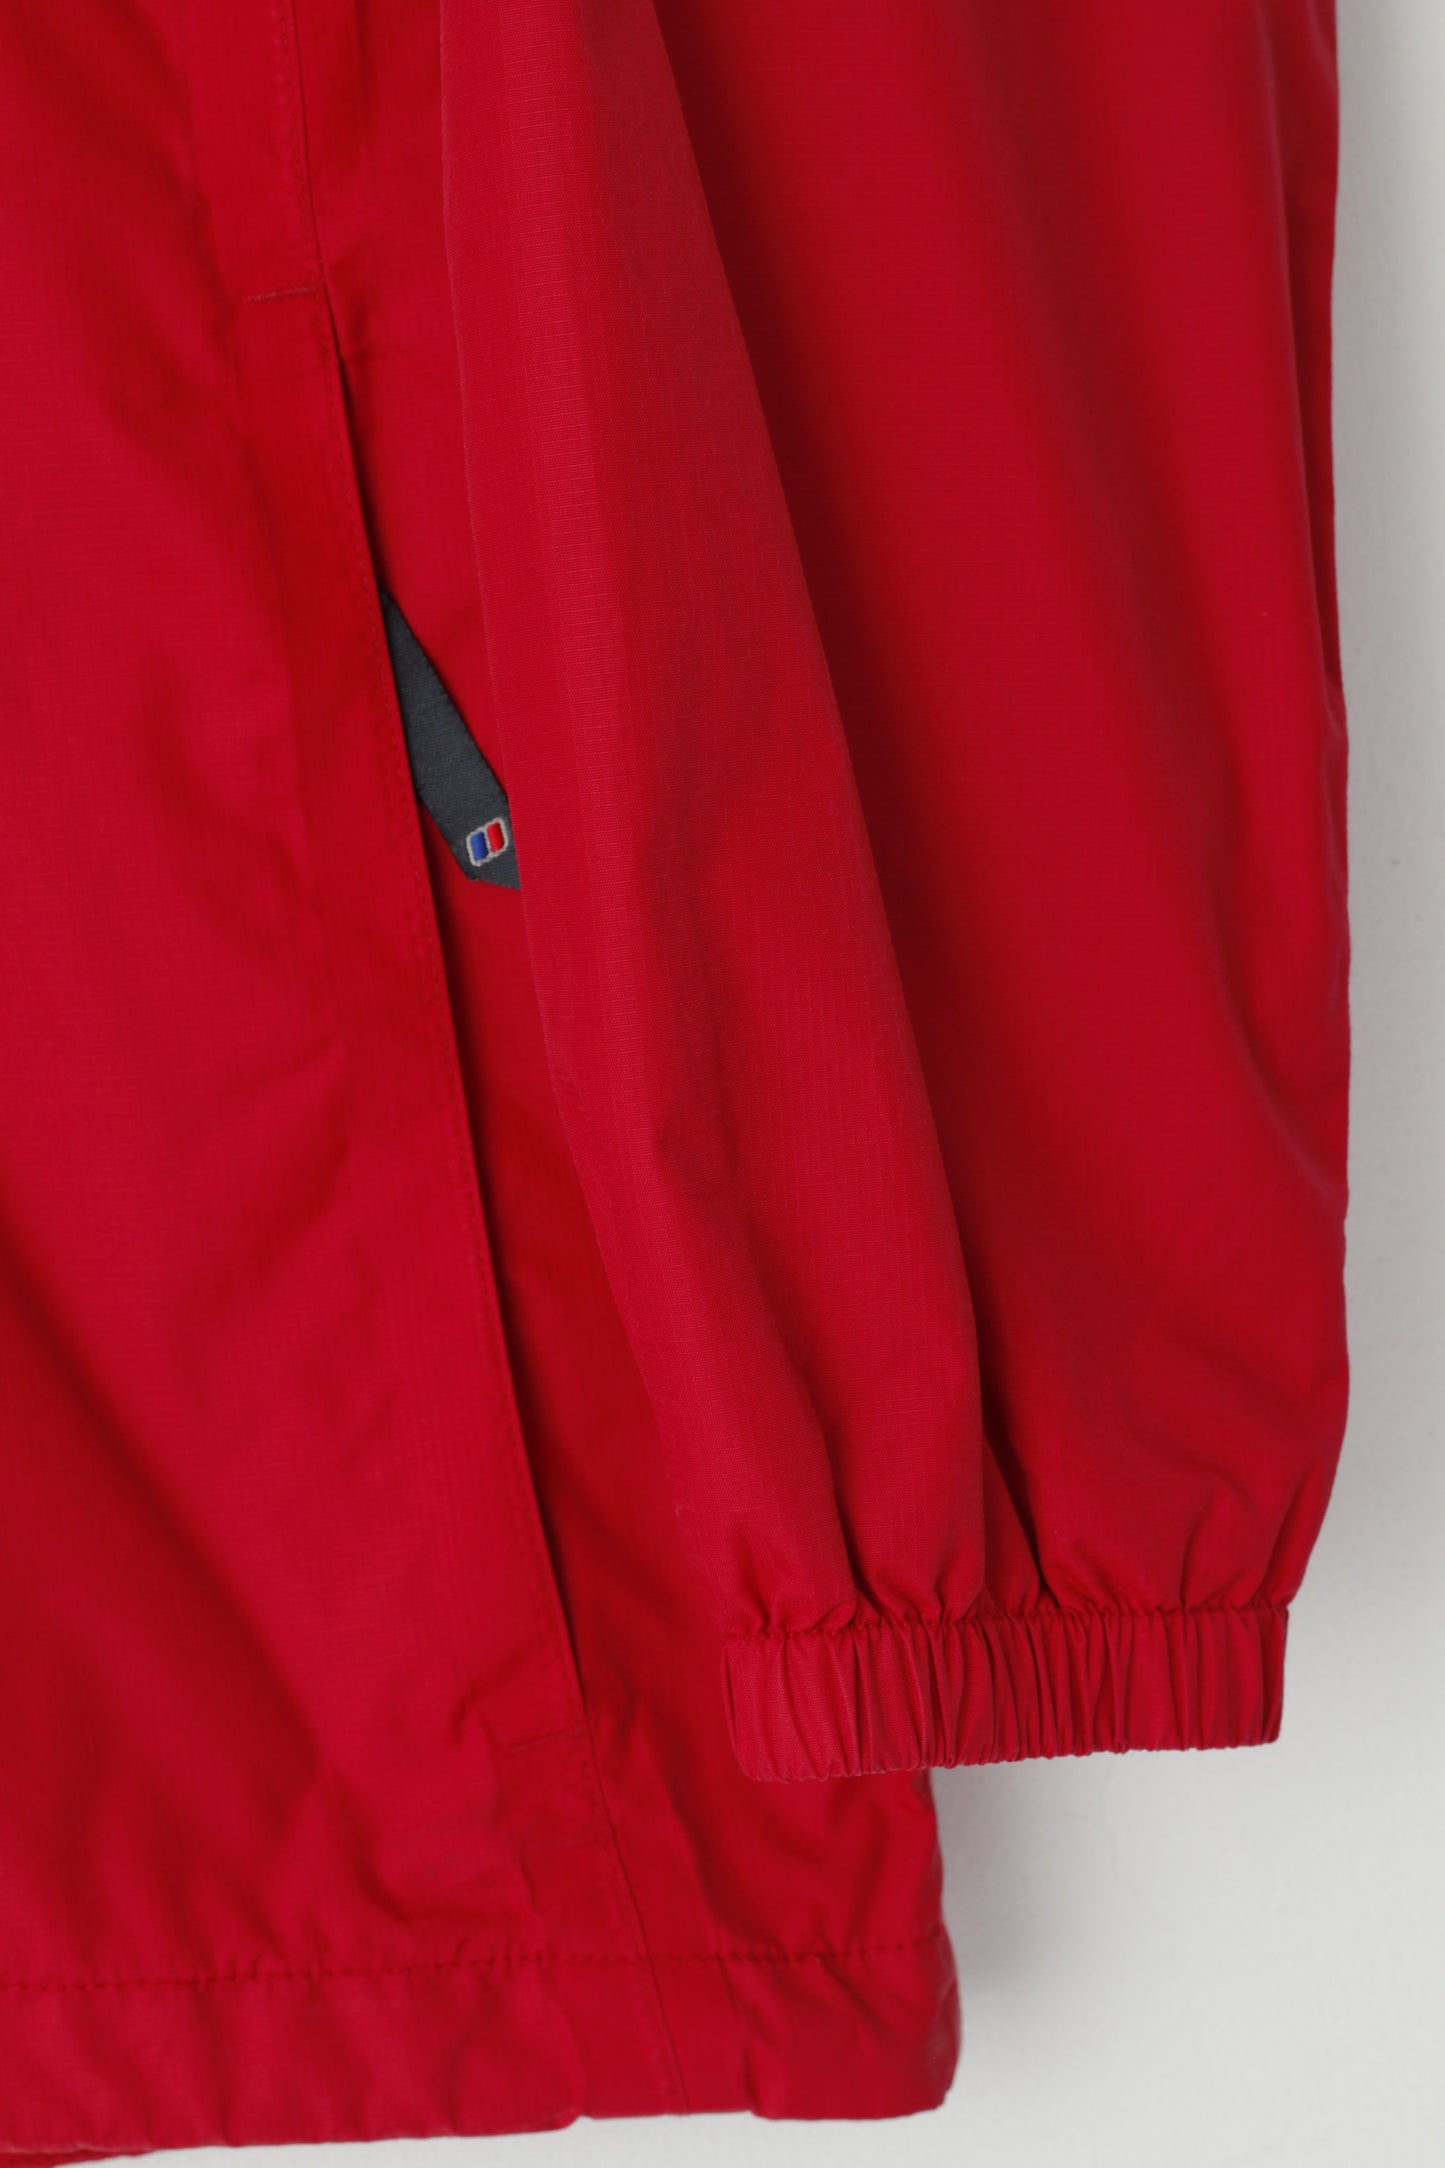 Berghaus Girls 13 Age 158-161 Jacket Red Hood Nylon Waterproof Outdoor Top